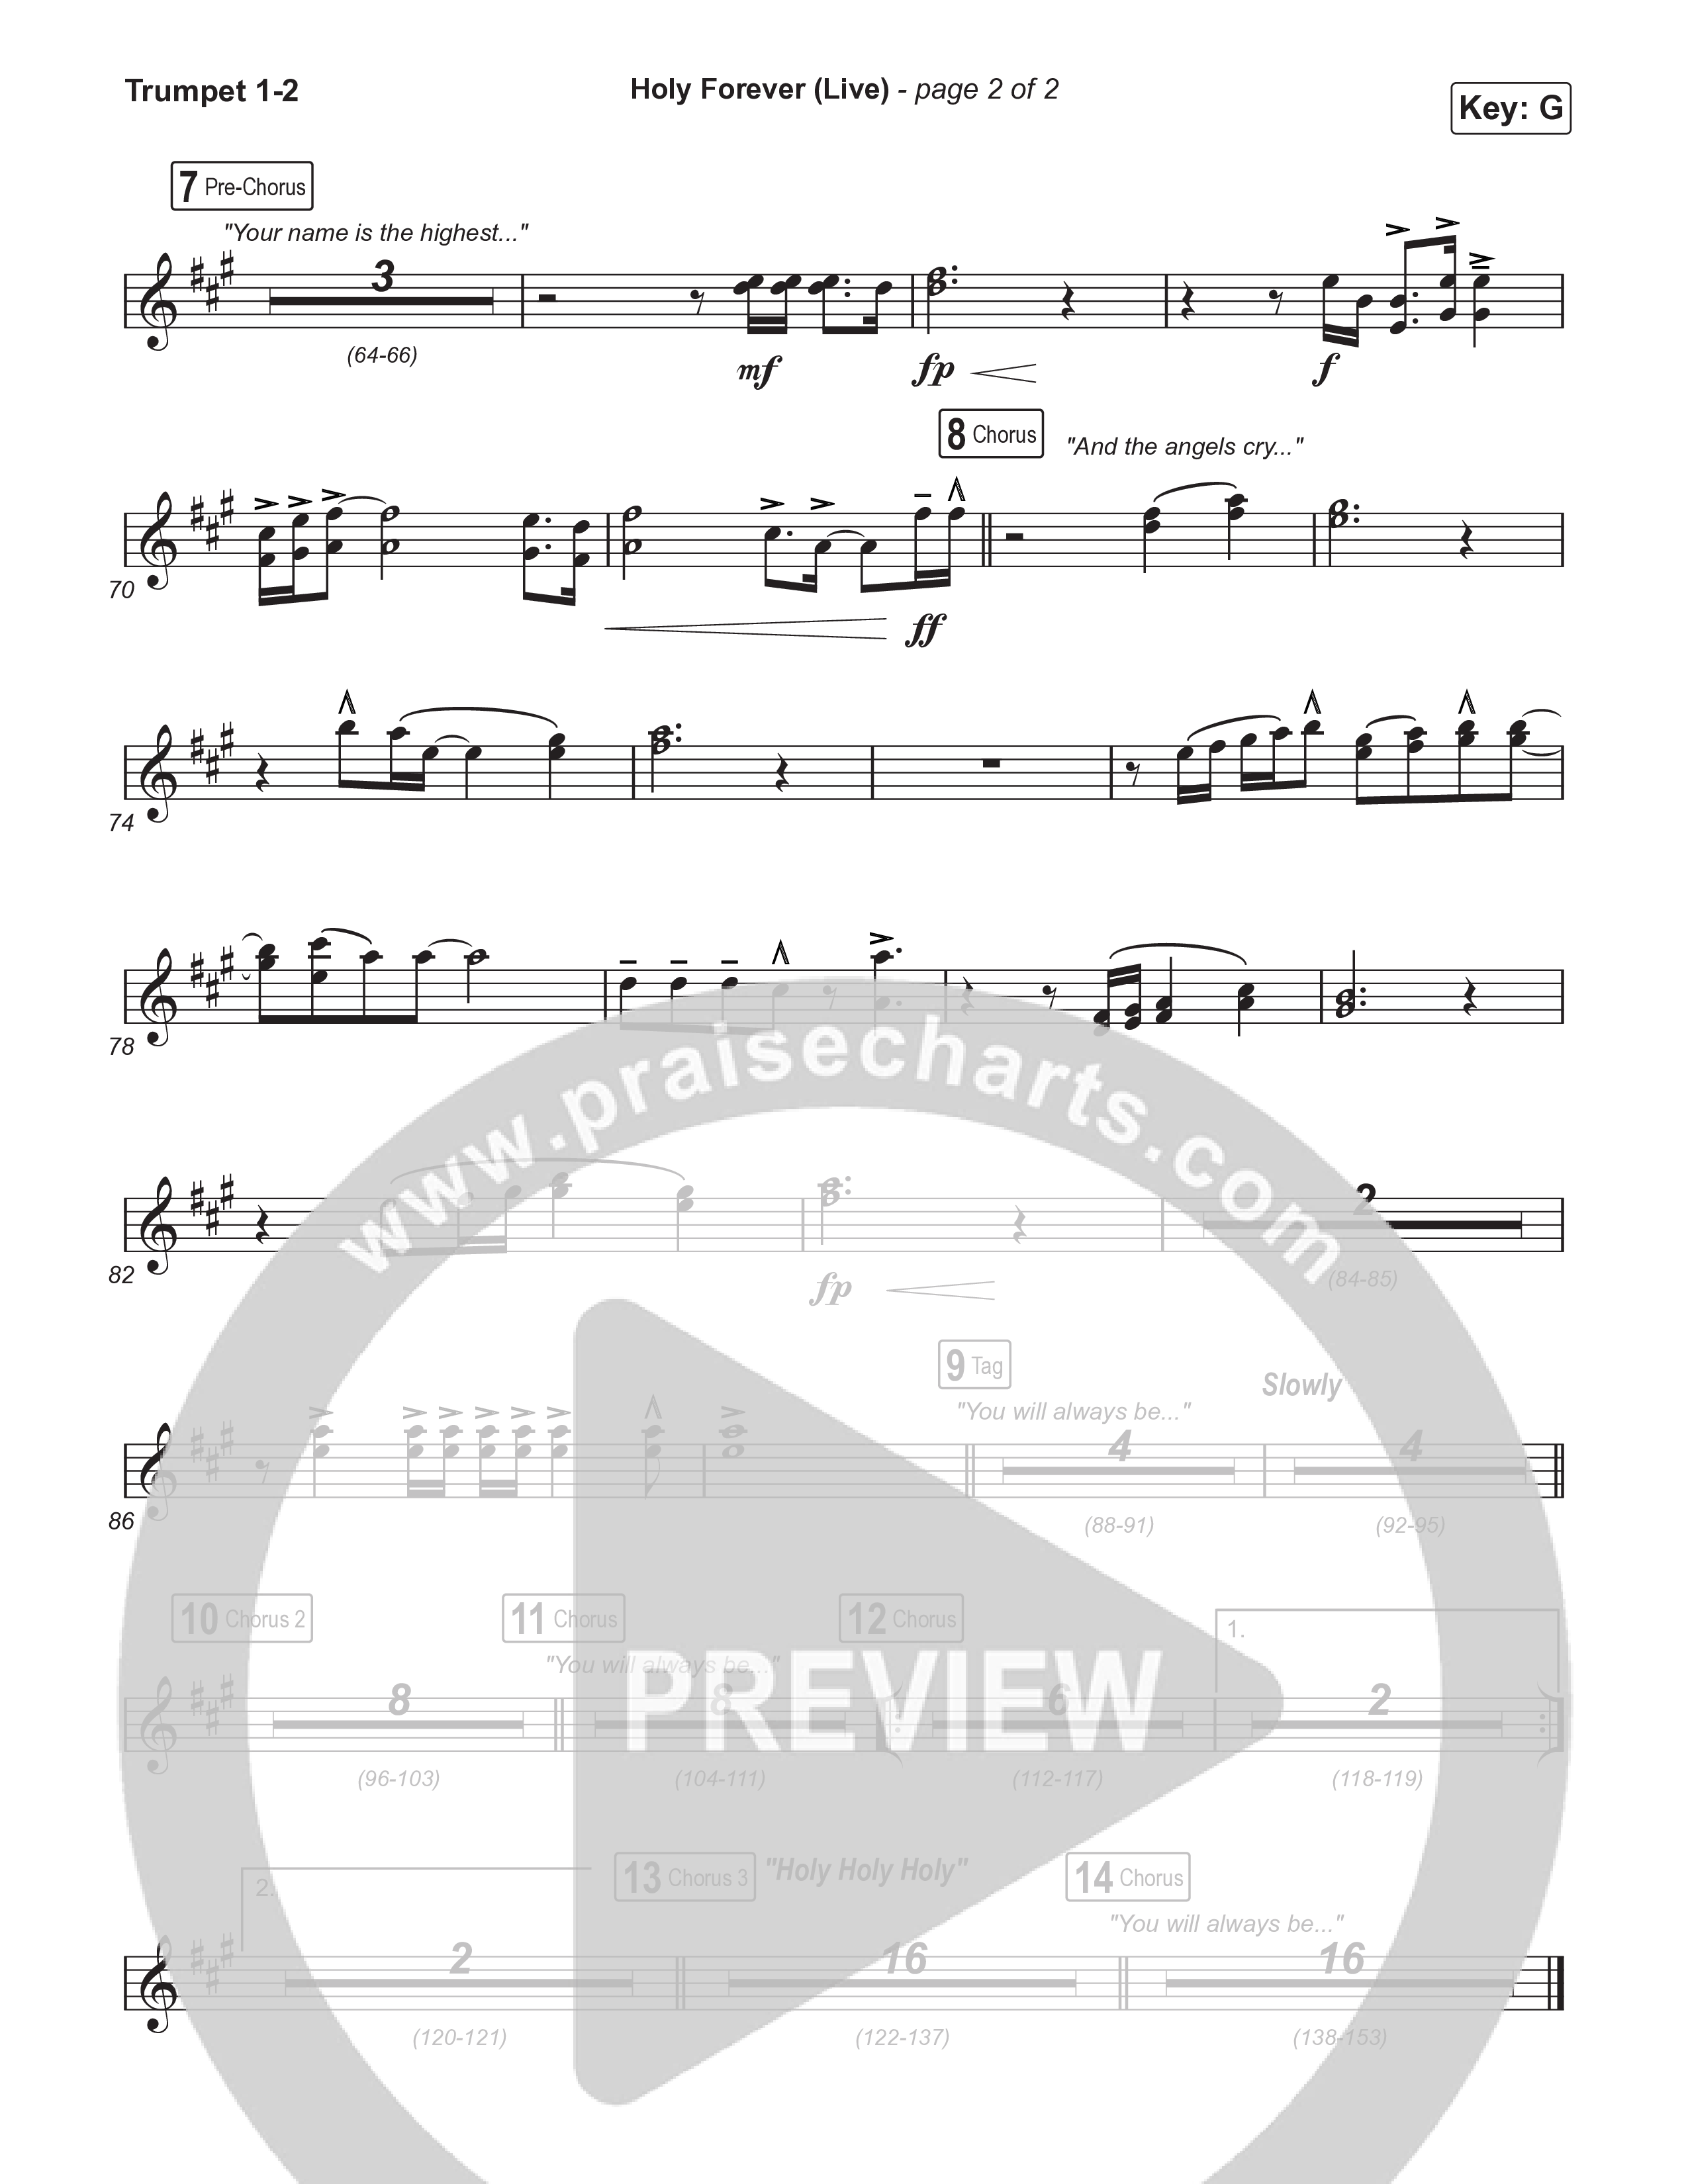 Holy Forever (Unison/2-Part) Trumpet 1,2 (CeCe Winans / Arr. Luke Gambill)